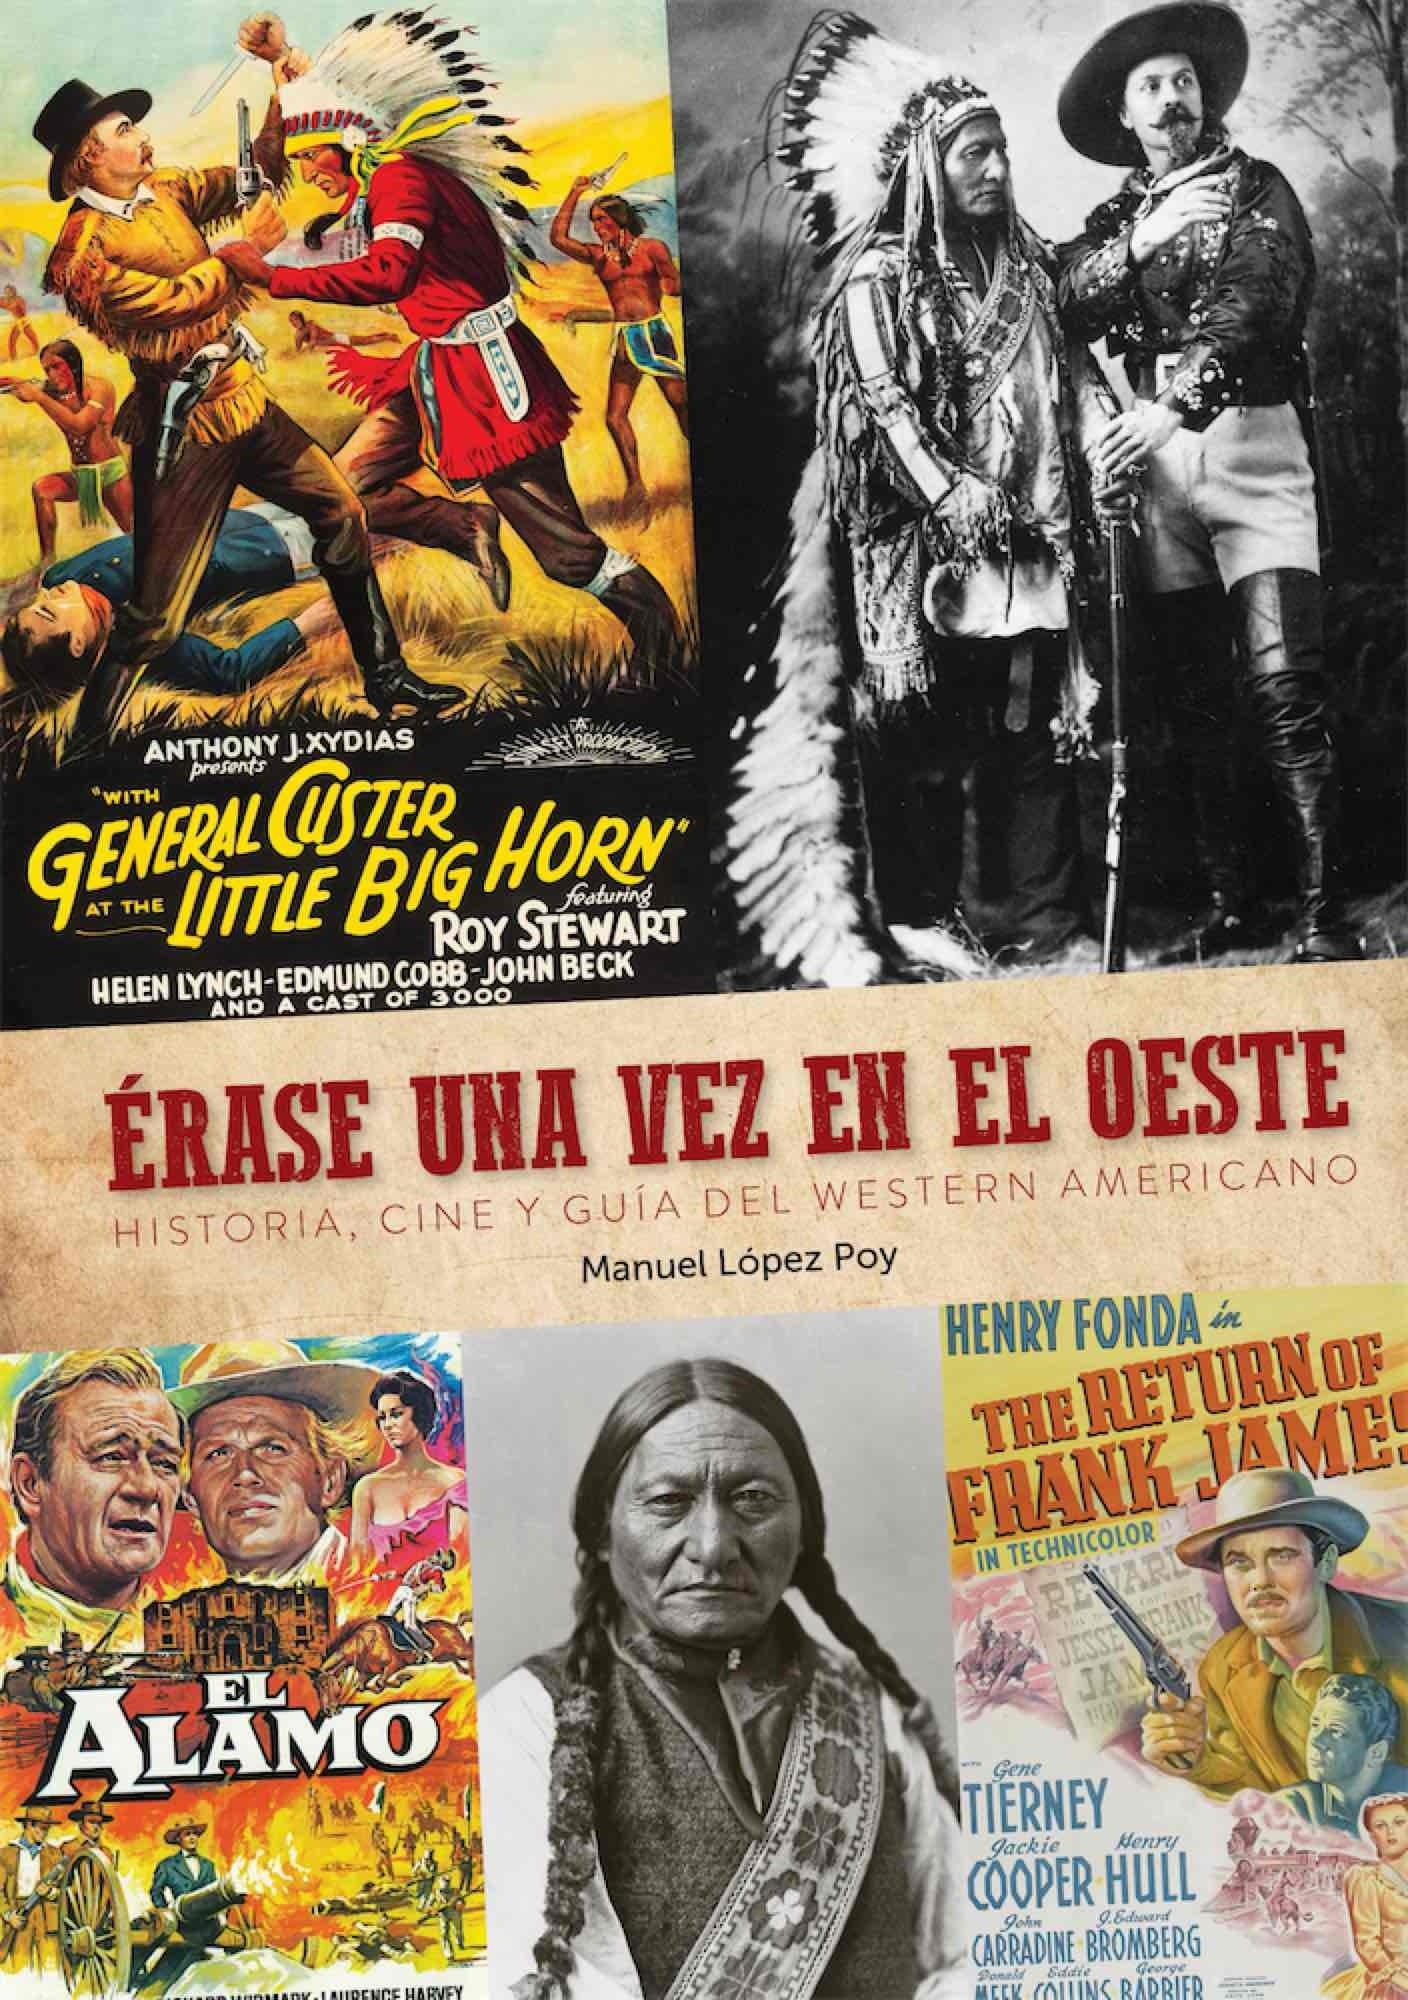 Erase una vez en el Oeste "Historia, cine y guía del western americano"